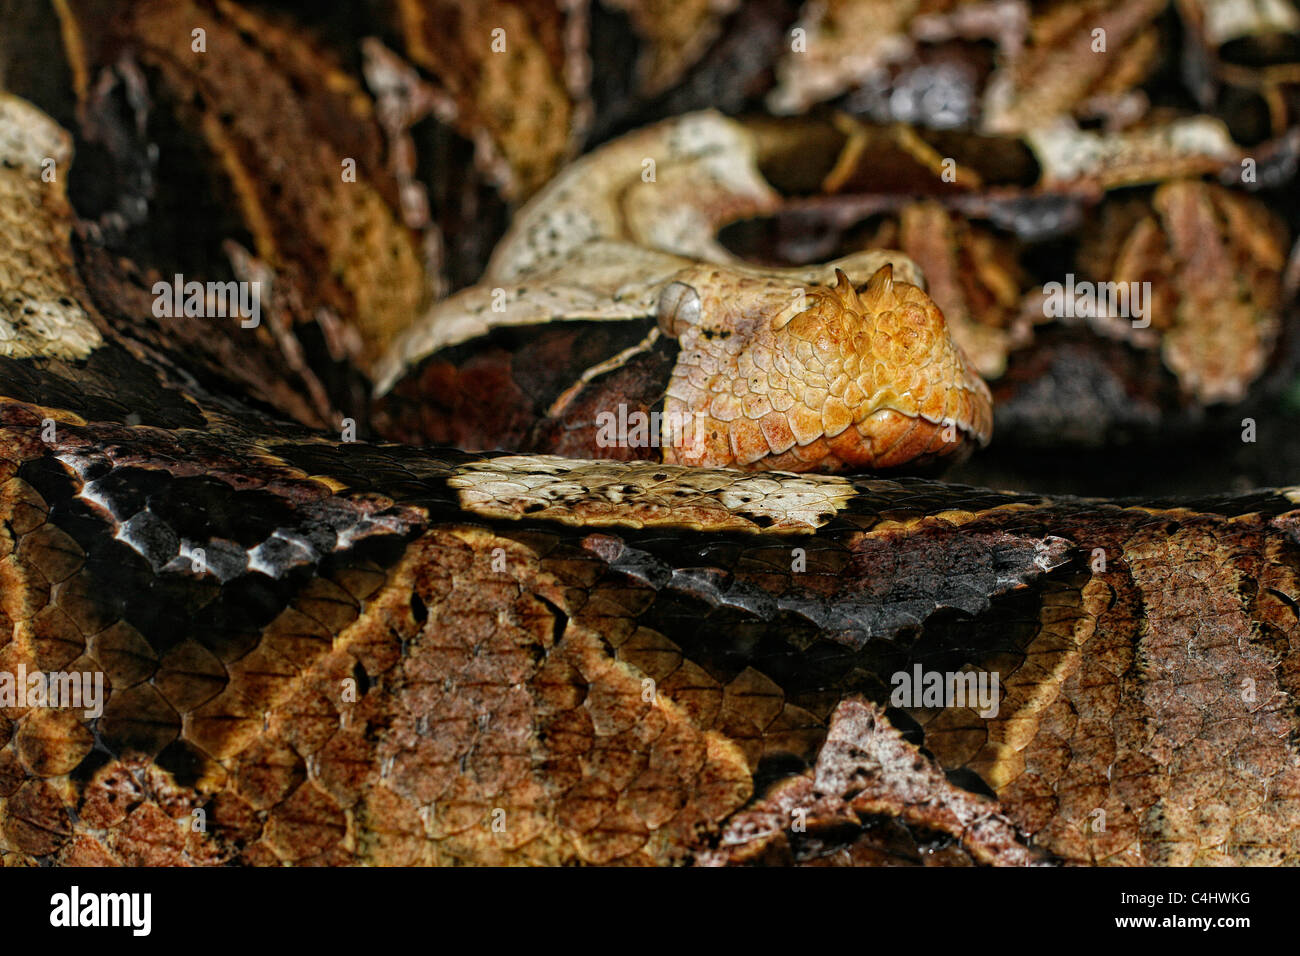 Die afrikanischen giftige Viper Bitis Gabonica auch bekannt als 'Gabun Viper' "Schmetterling Adder" "Wald Blätterteig Adder" oder swampjack Stockfoto